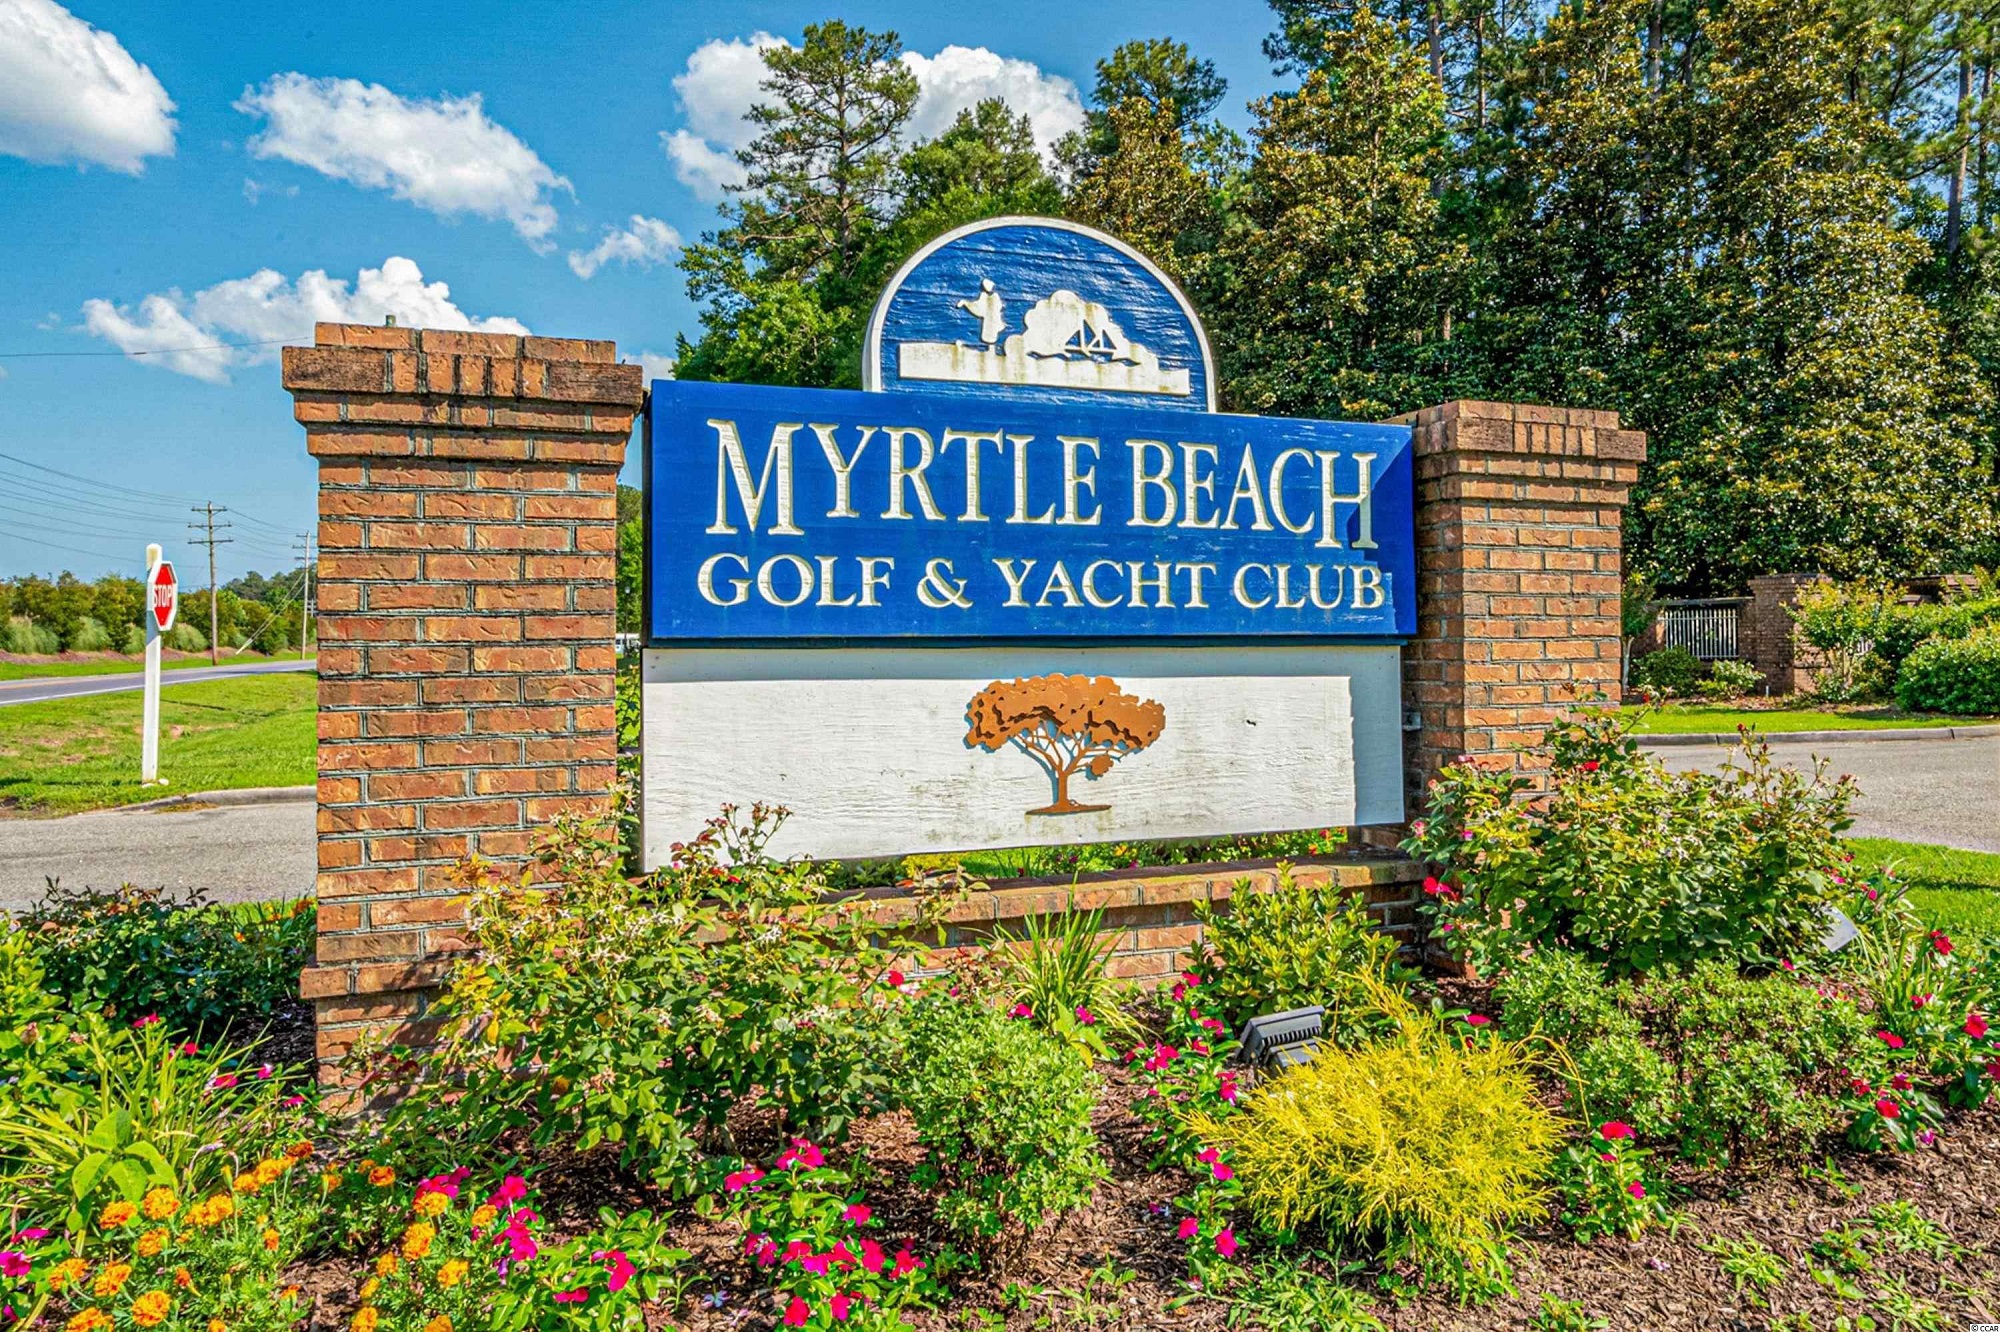 Myrtle Beach Golf & Yacht Condos for Sale in Myrtle Beach SC